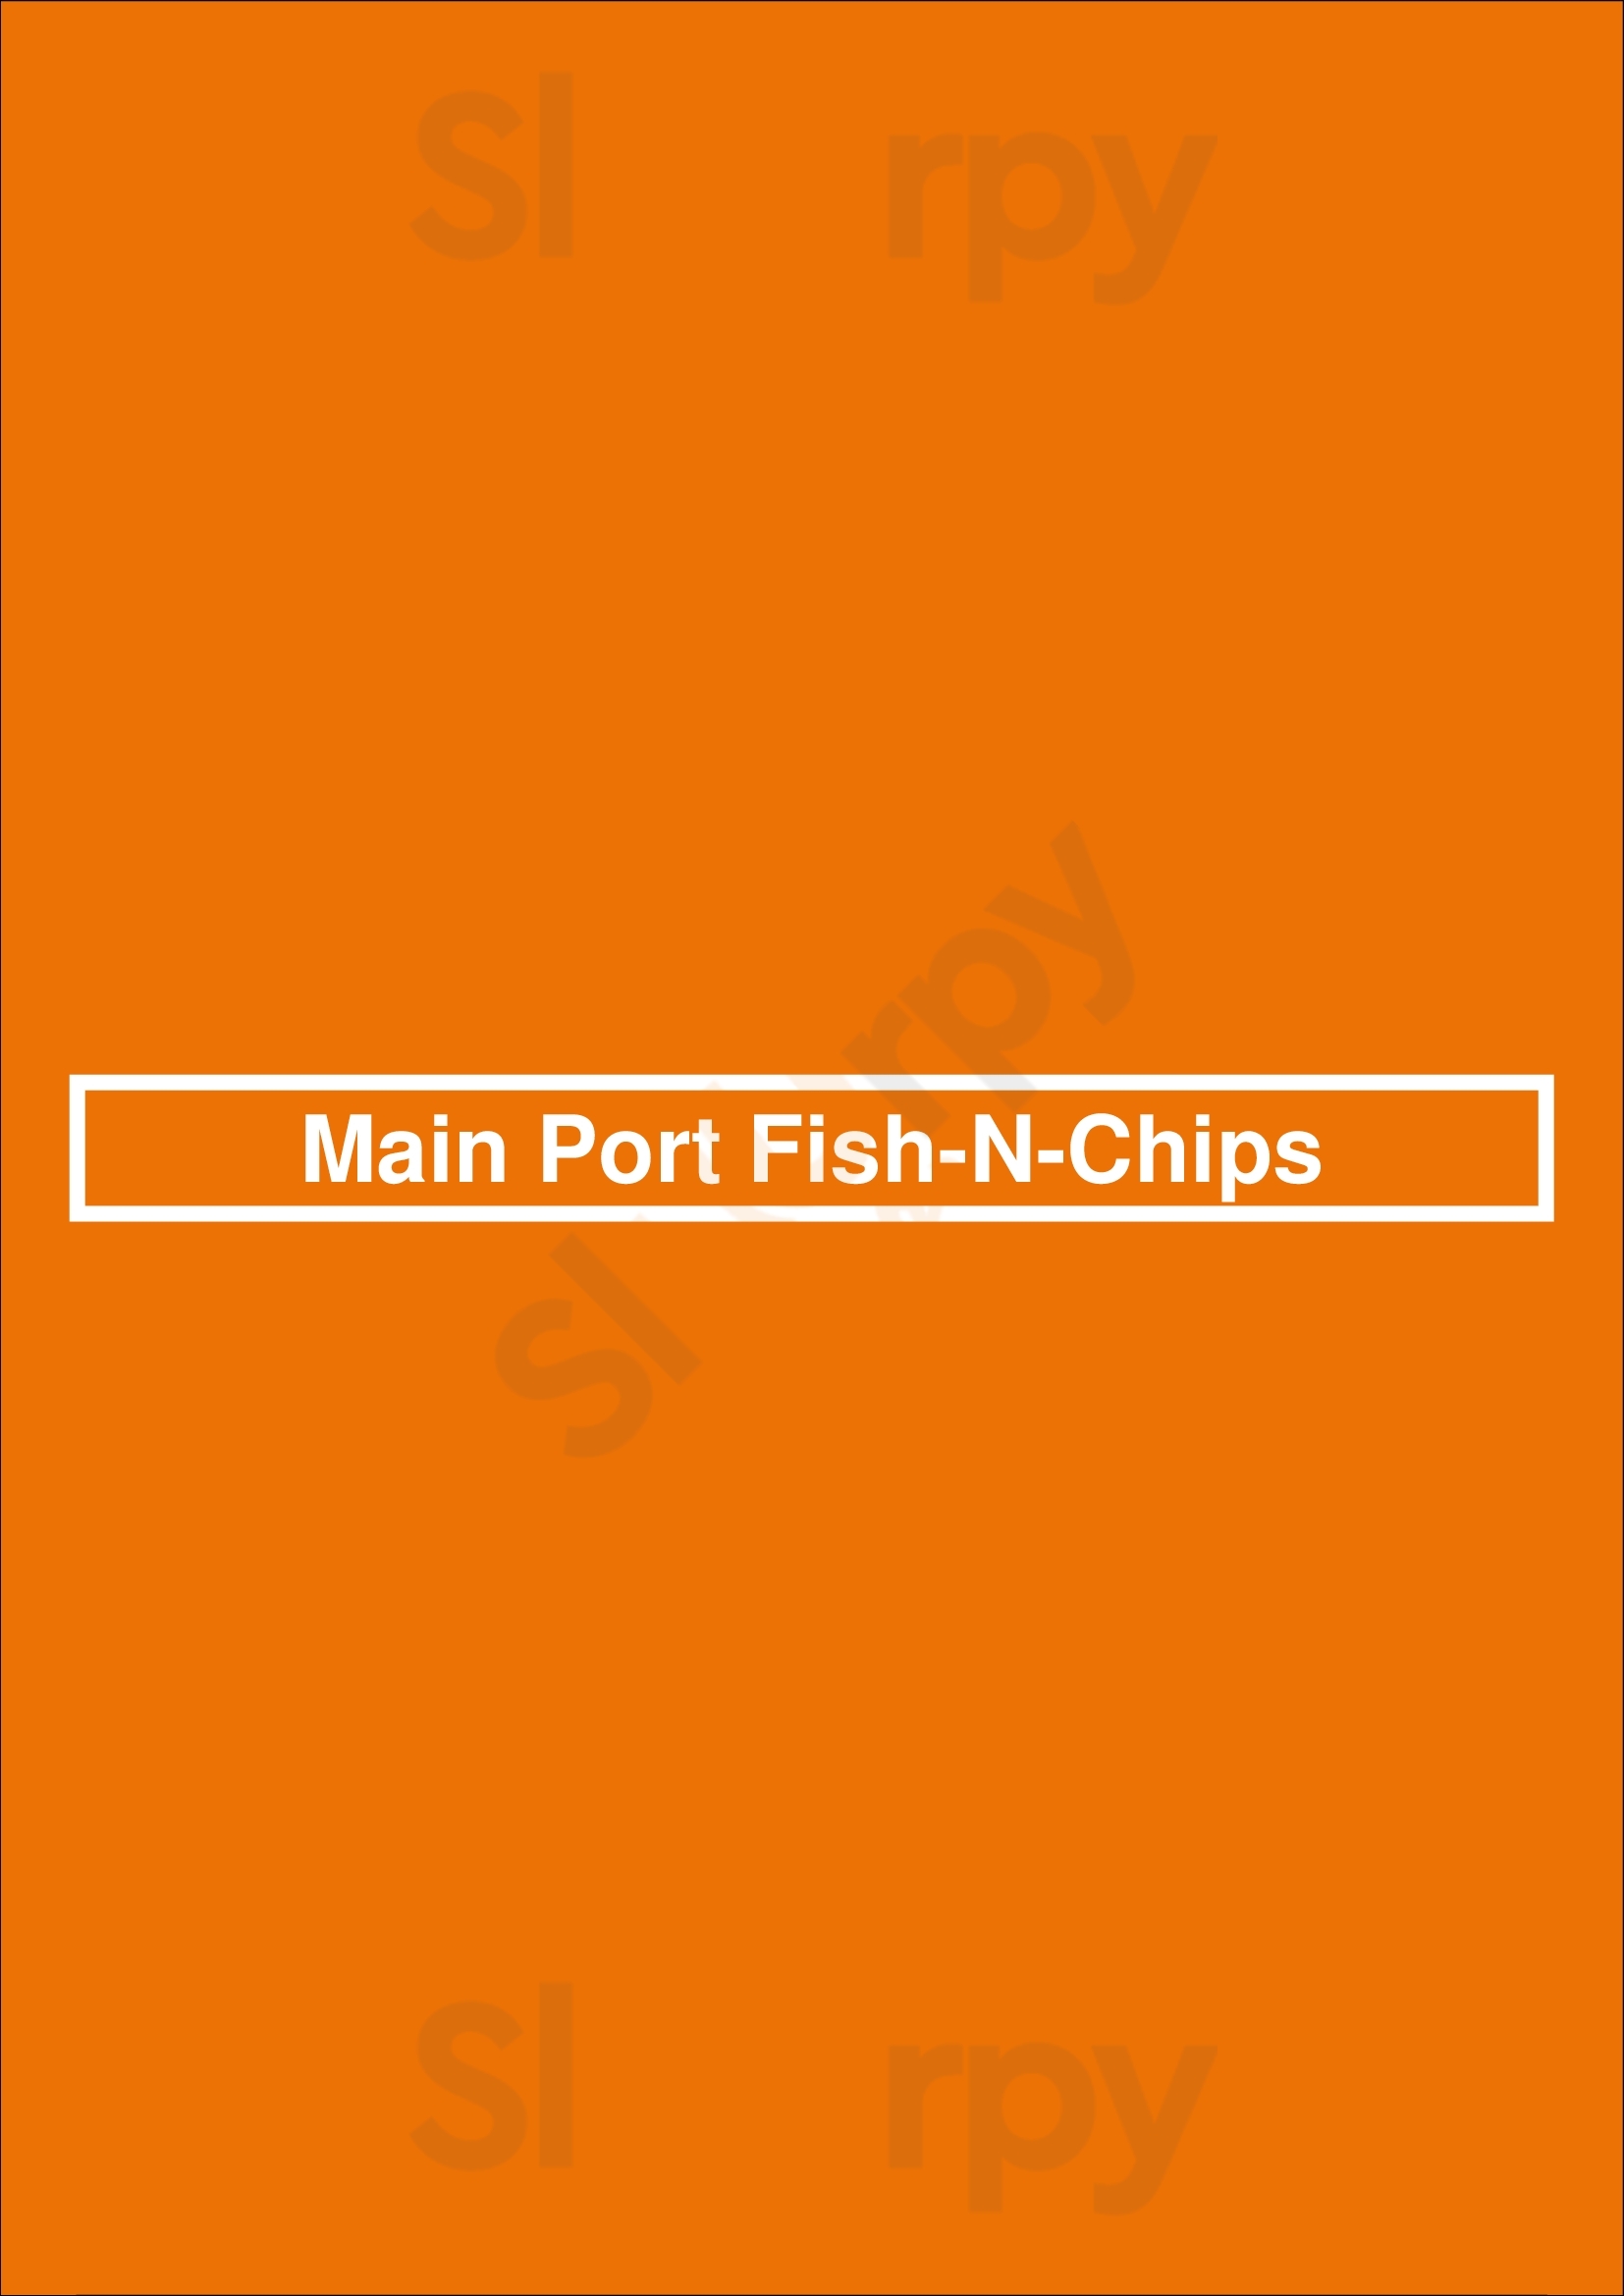 Main Port Fish-n-chips Bridgeport Menu - 1